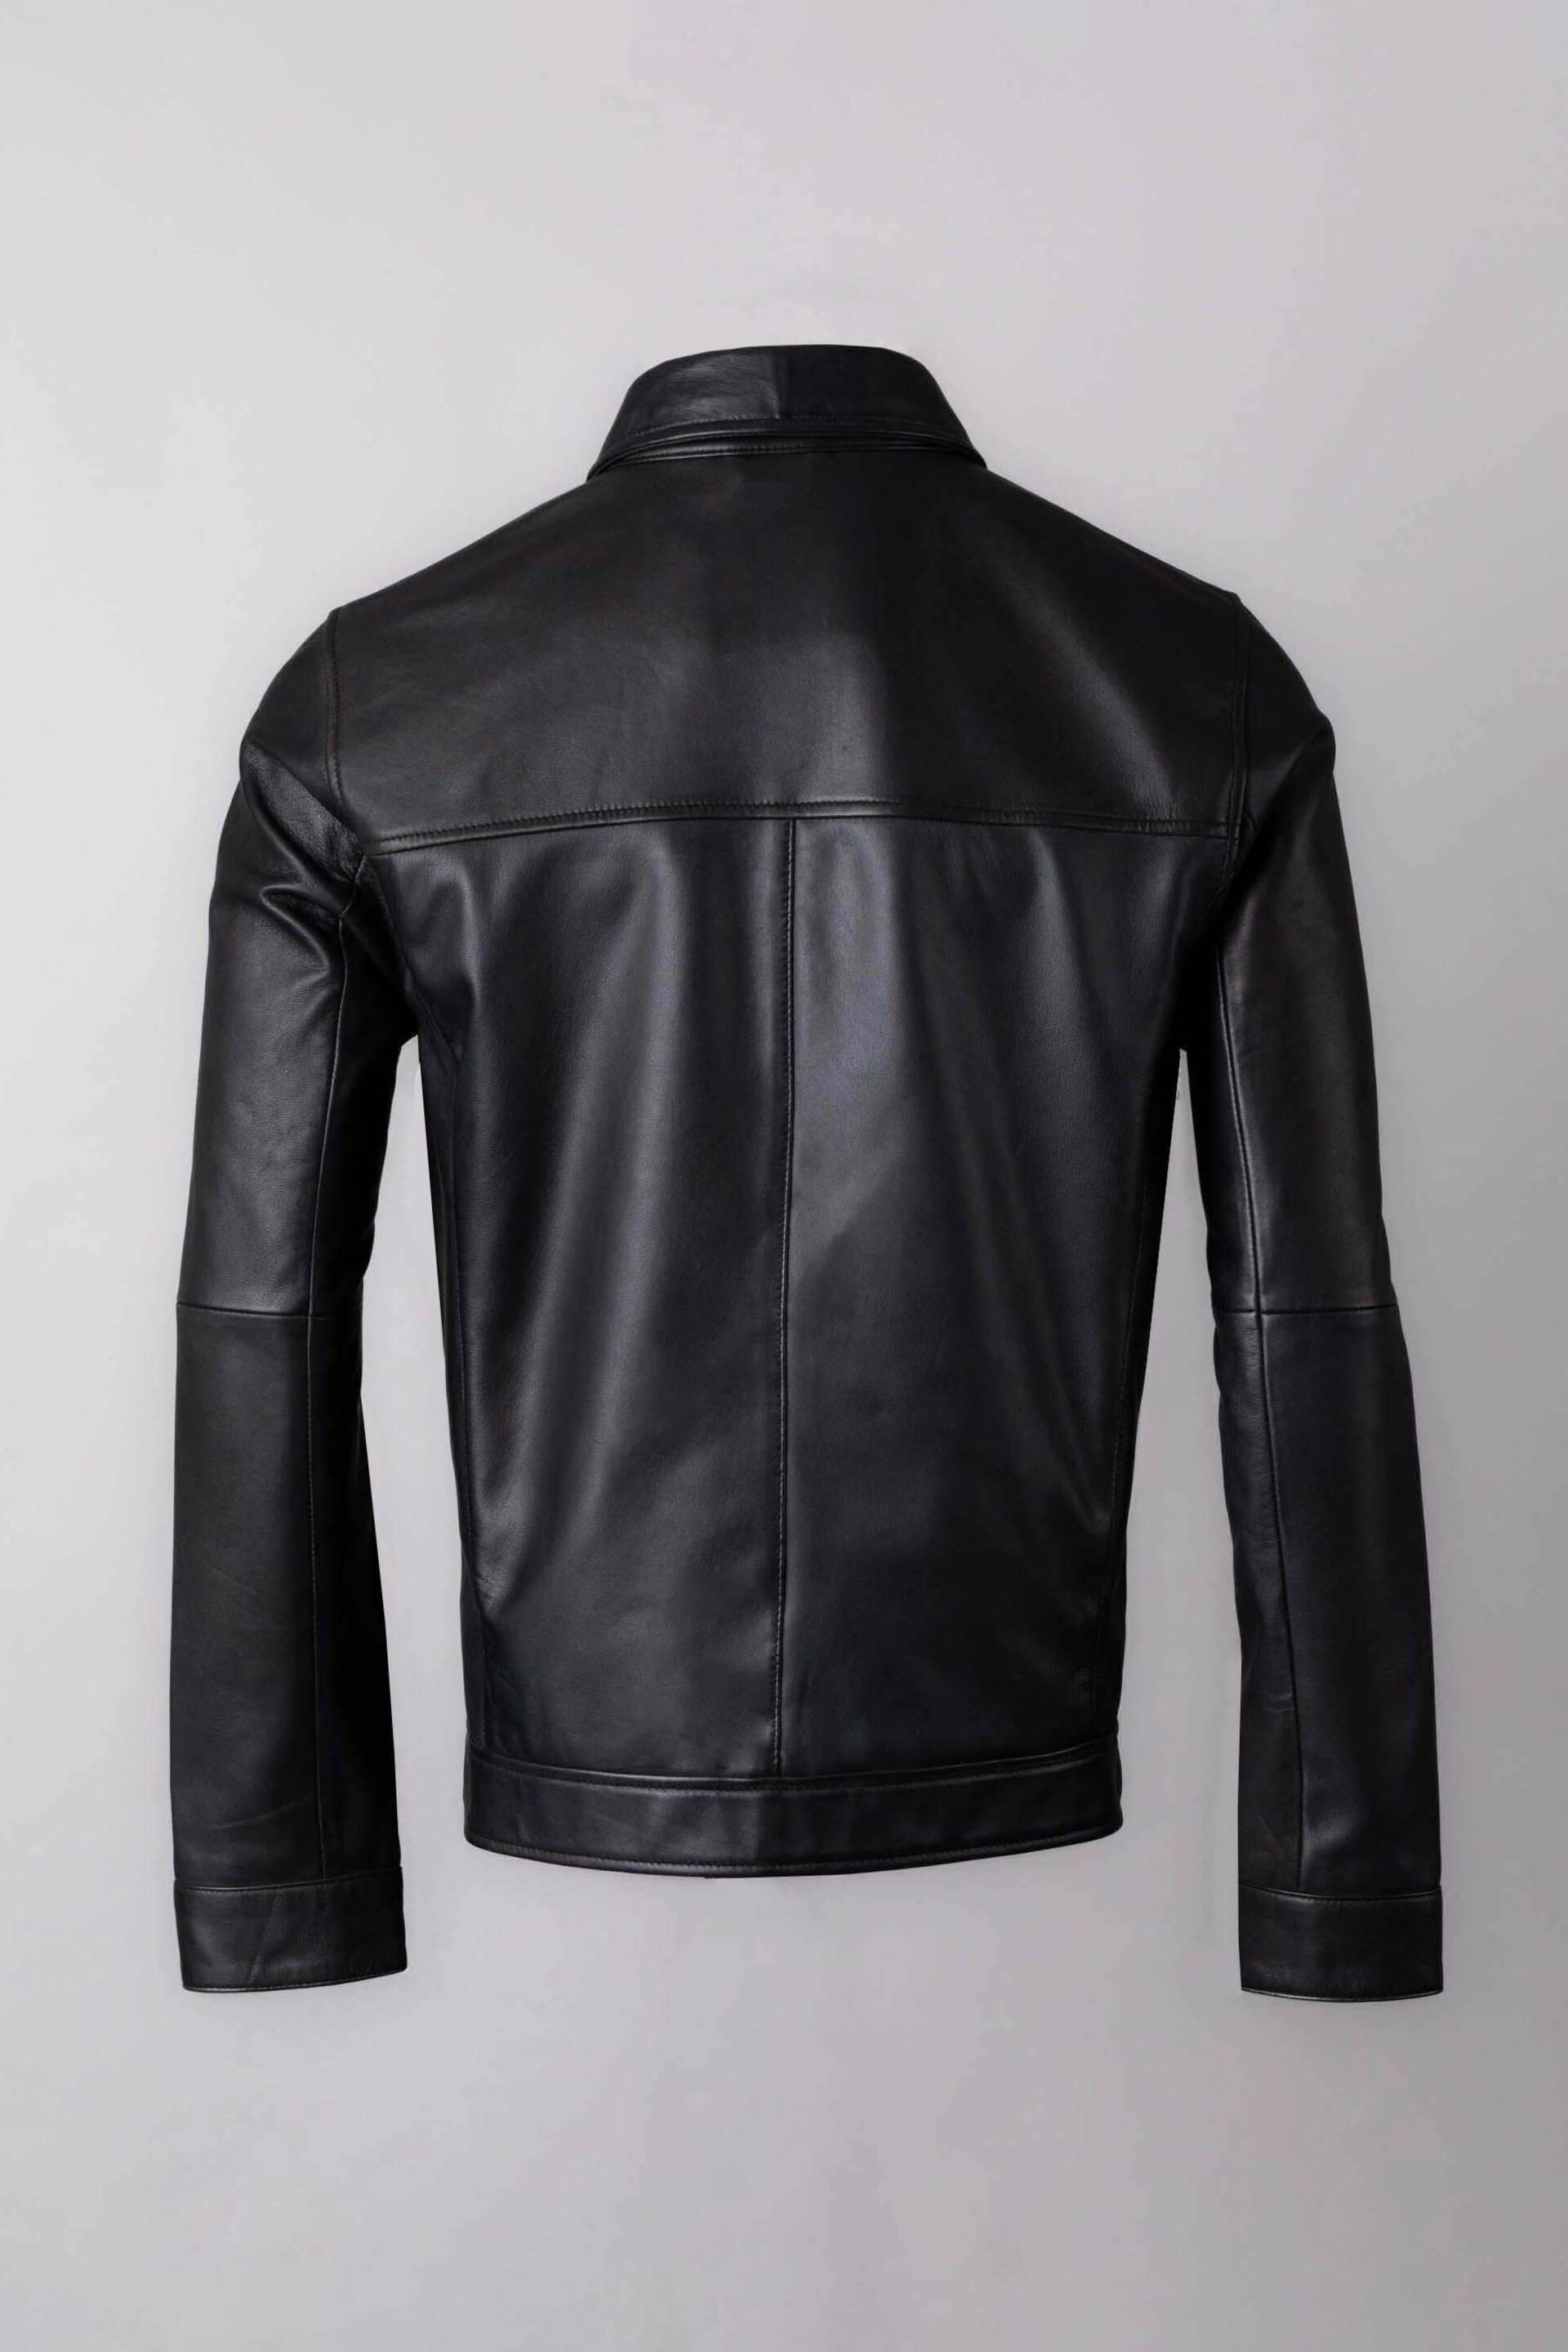 Lakeland Leather Black Renwick Collared Leather Jacket - Image 9 of 12